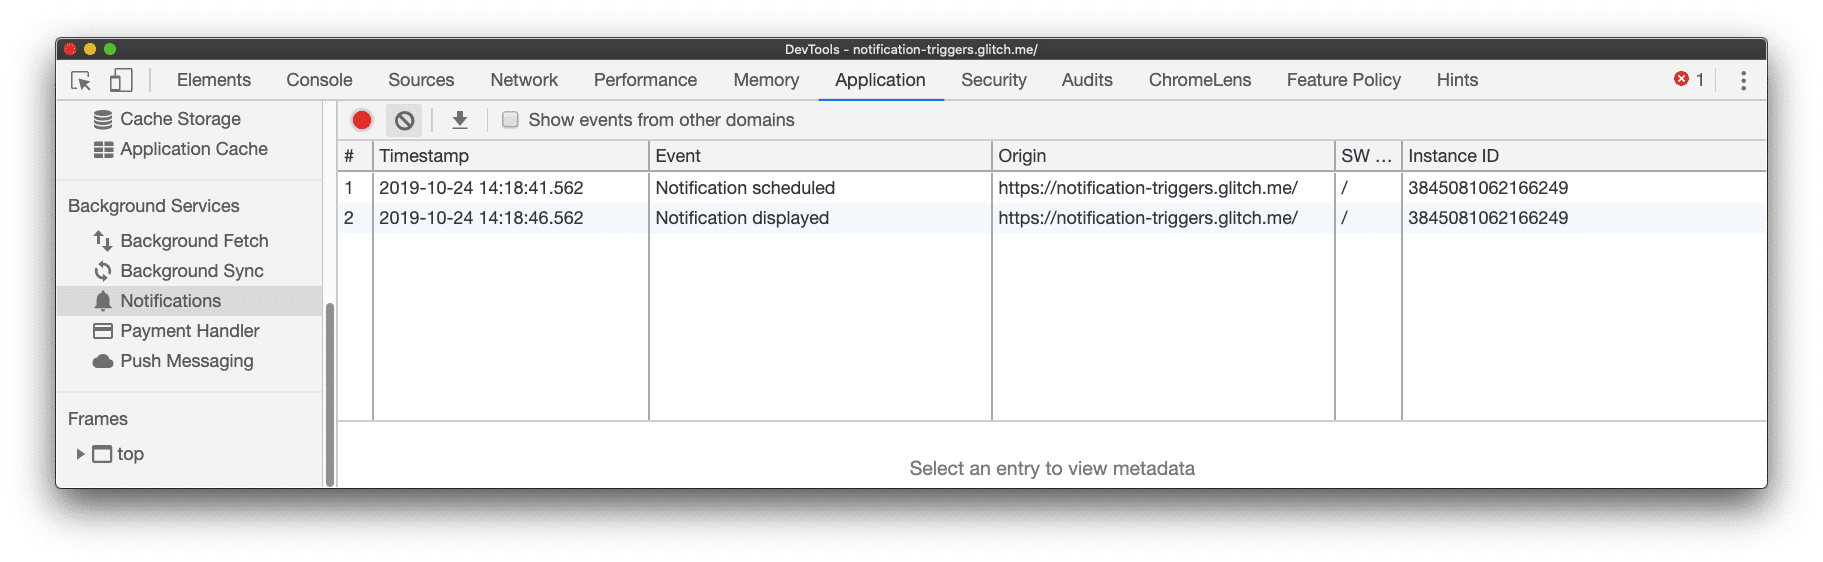 在 Chrome 开发者工具的“Notifications”窗格中记录了一个显示的通知事件。